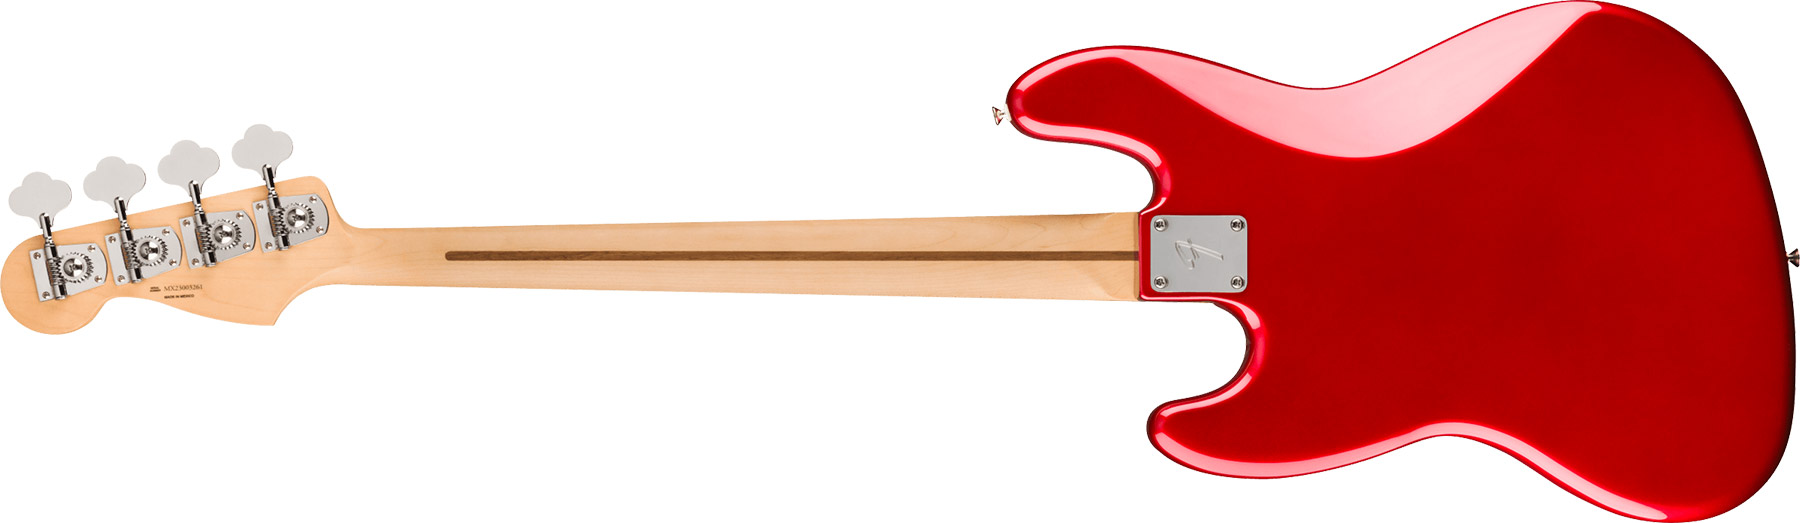 Fender Jazz Bass Player Mex 2023 Pf - Candy Apple Red - Solid body elektrische bas - Variation 1